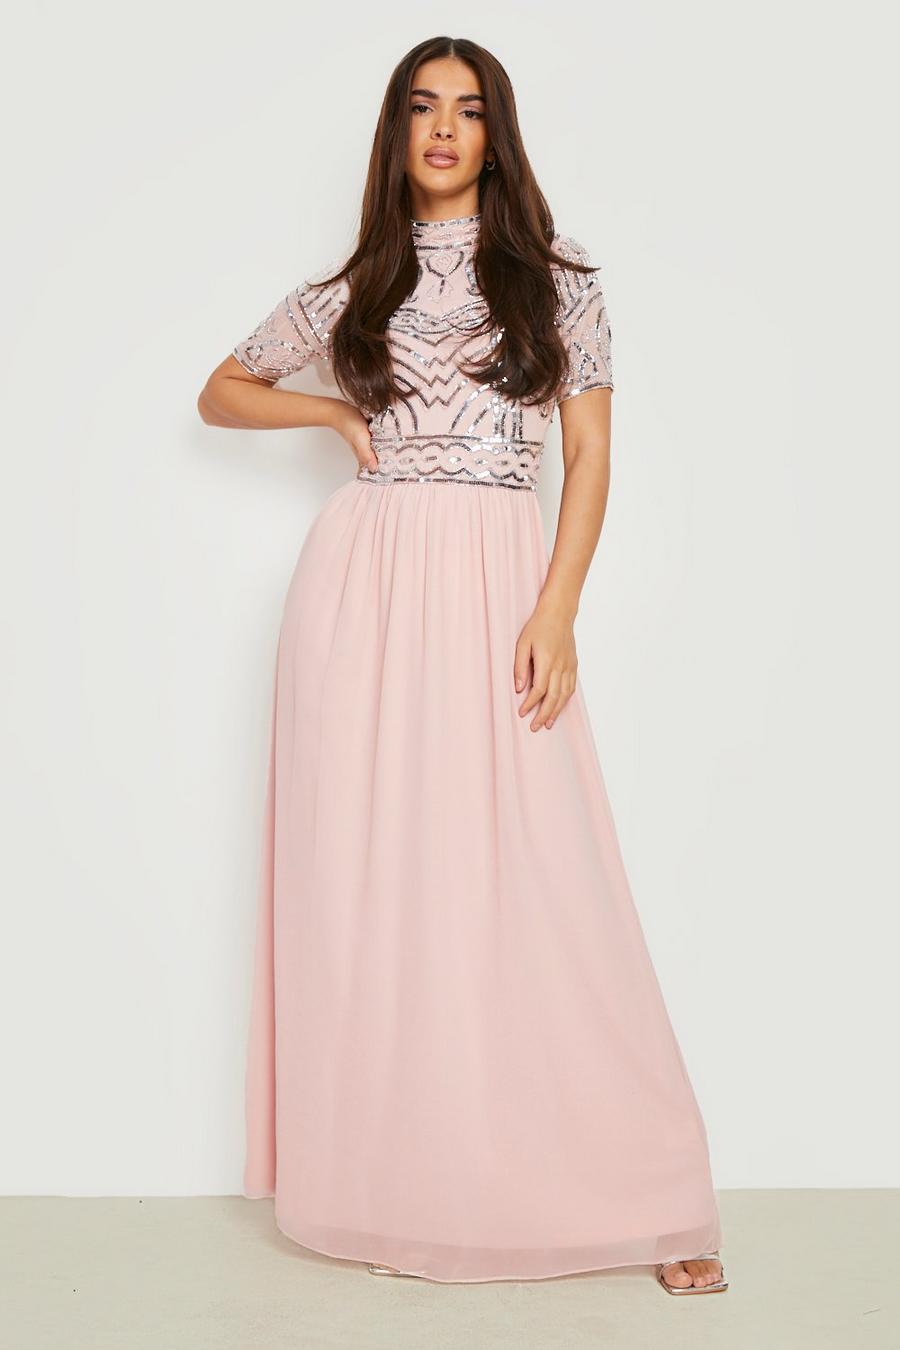 סמוק rosa שמלת שושבינה מקסי מעוטרת עם צווארון גבוה